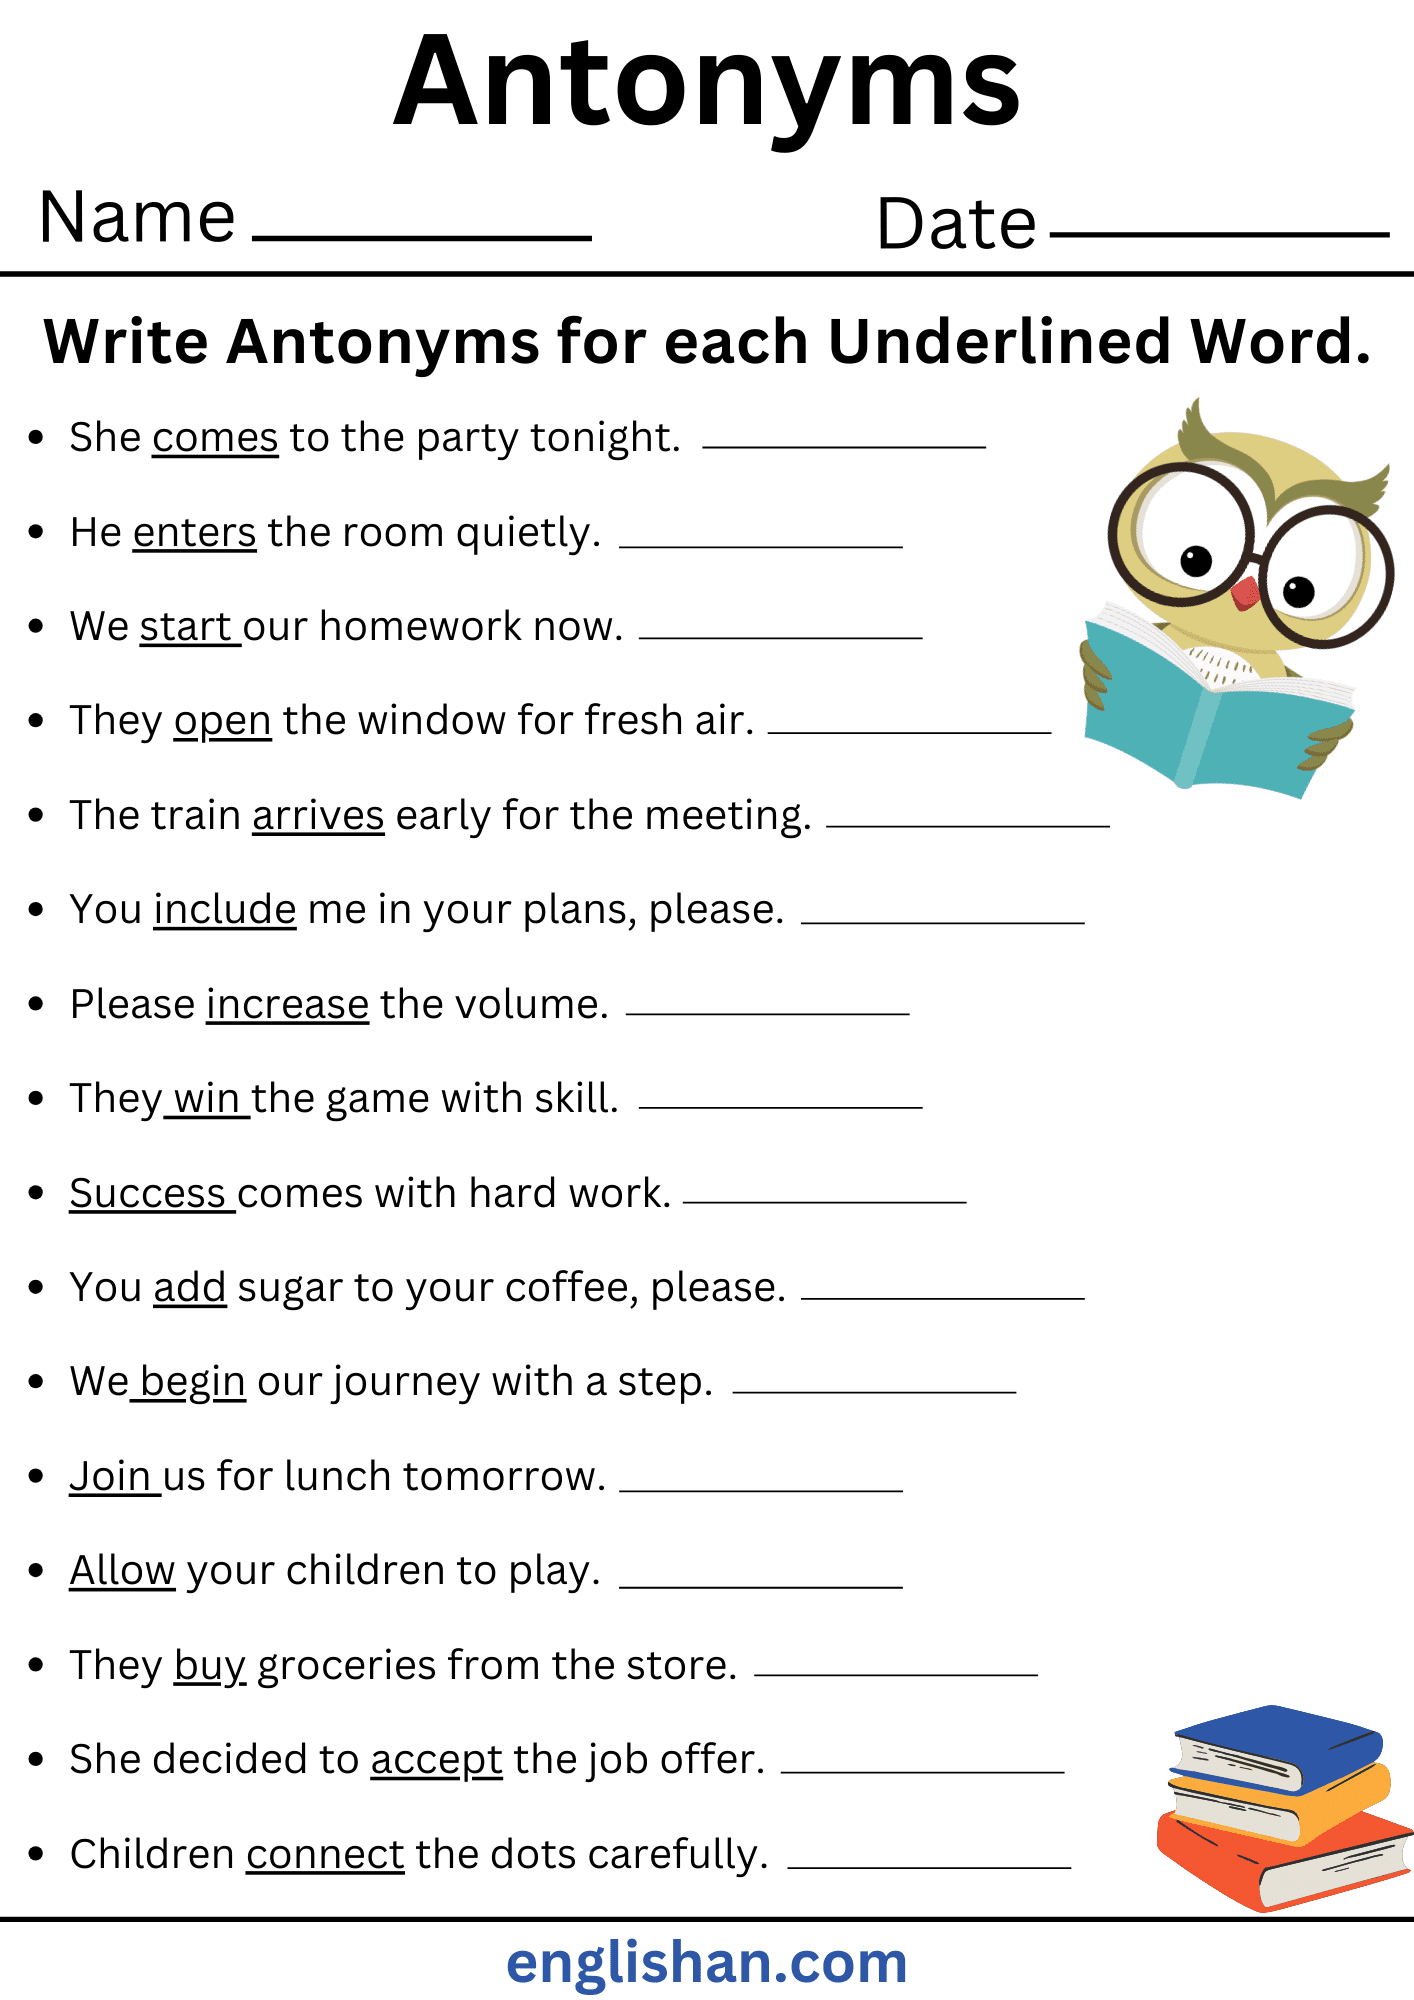 25 Sentences using Antonyms Worksheets. Write Antonyms for each Underlined Word. Antonyms Worksheets